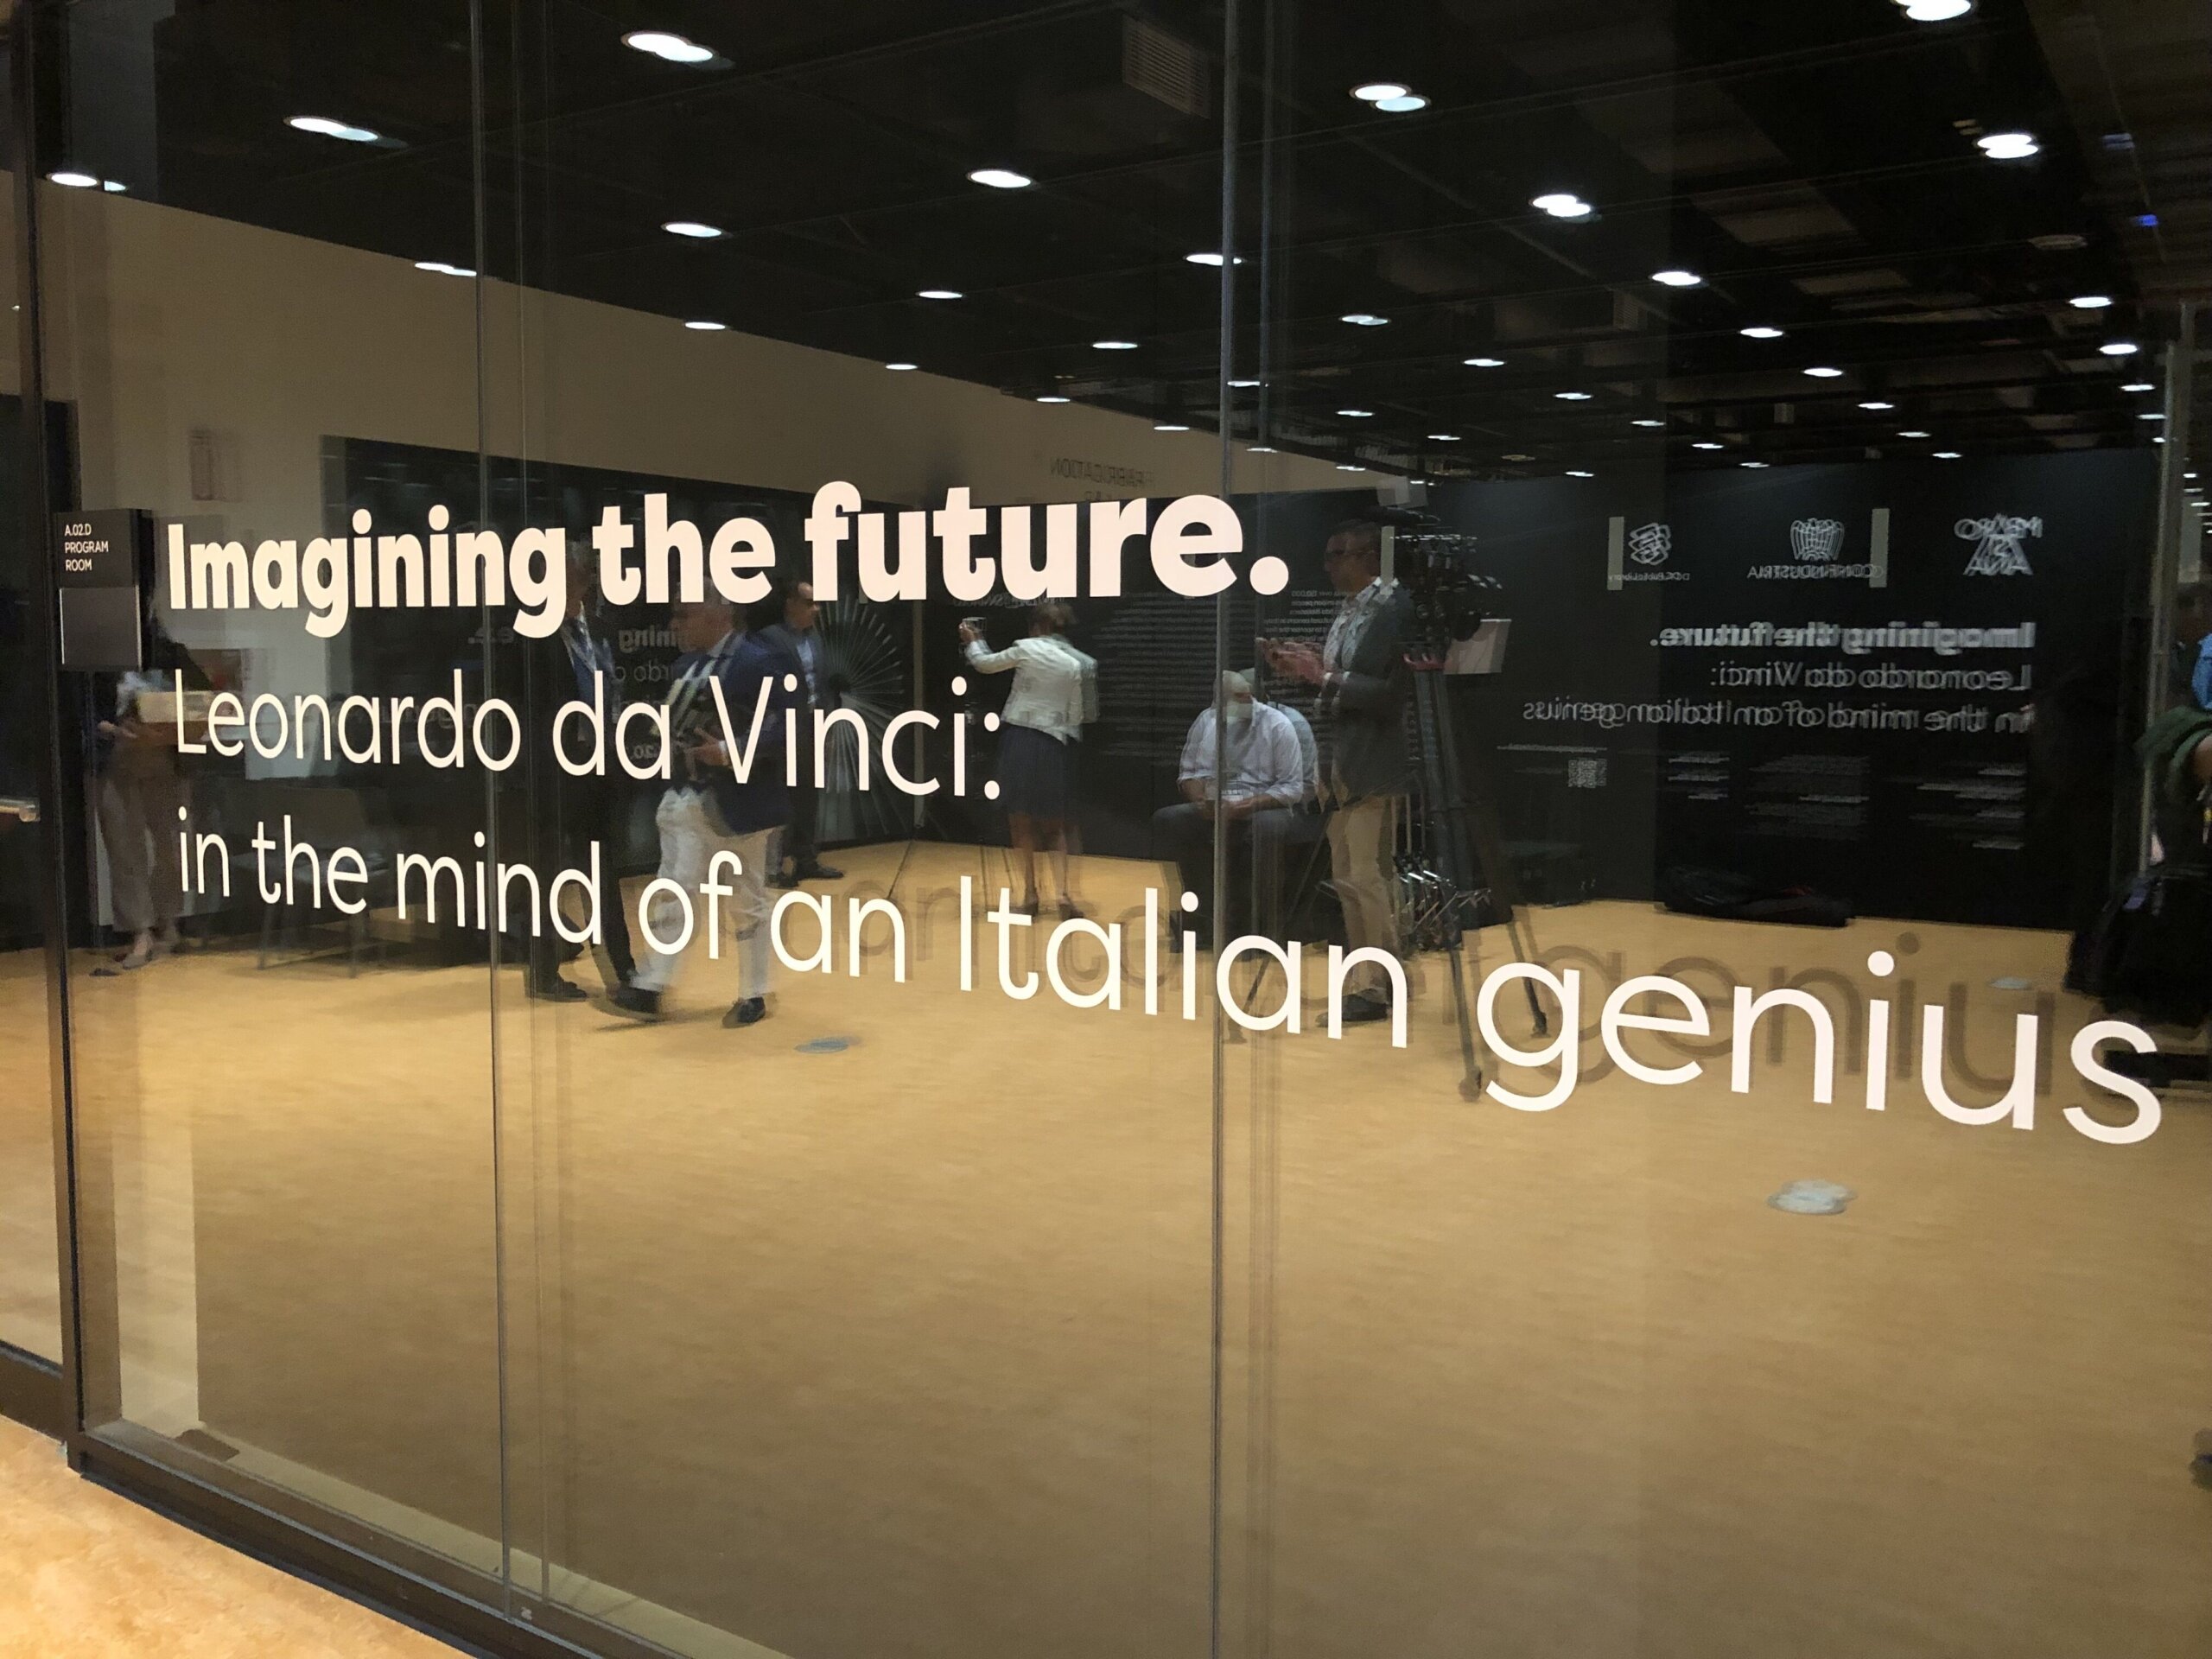 Scopri il lato scientifico di Leonardo da Vinci in una rara mostra presso la MLK Jr. Library.